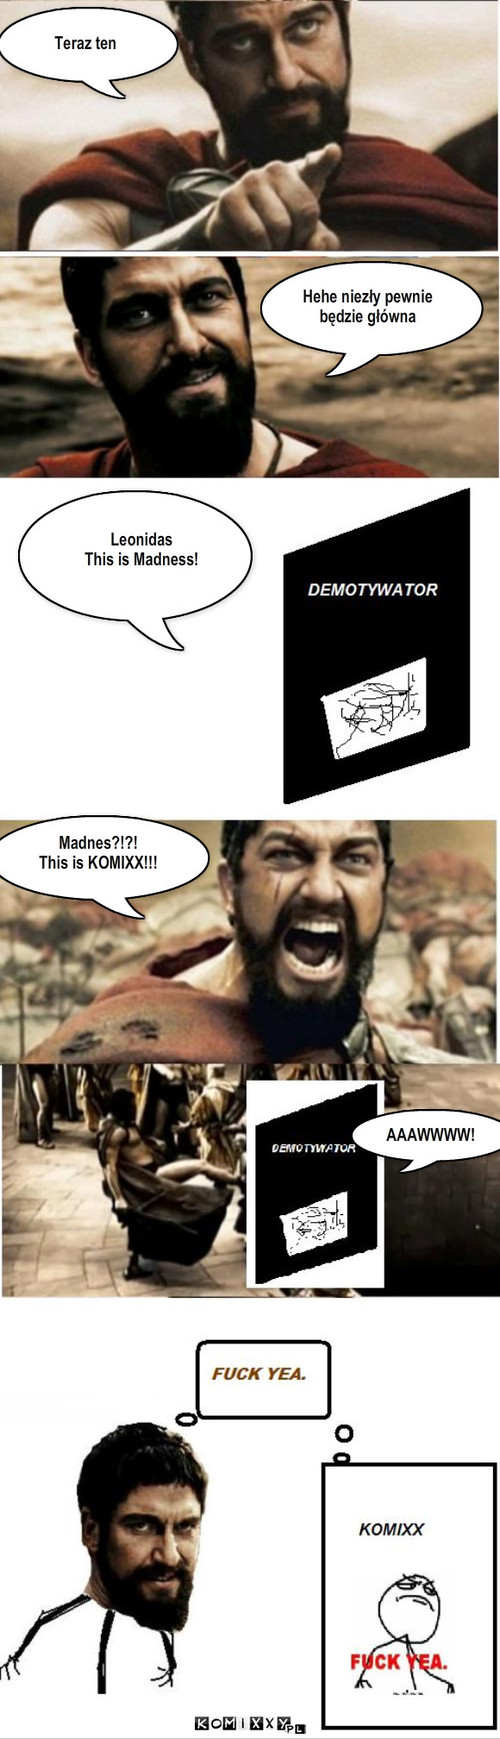 This is KOMIXX – Teraz ten Hehe niezły pewnie 
będzie główna Leonidas
This is Madness! Madnes?!?!
This is KOMIXX!!! AAAWWWW! 